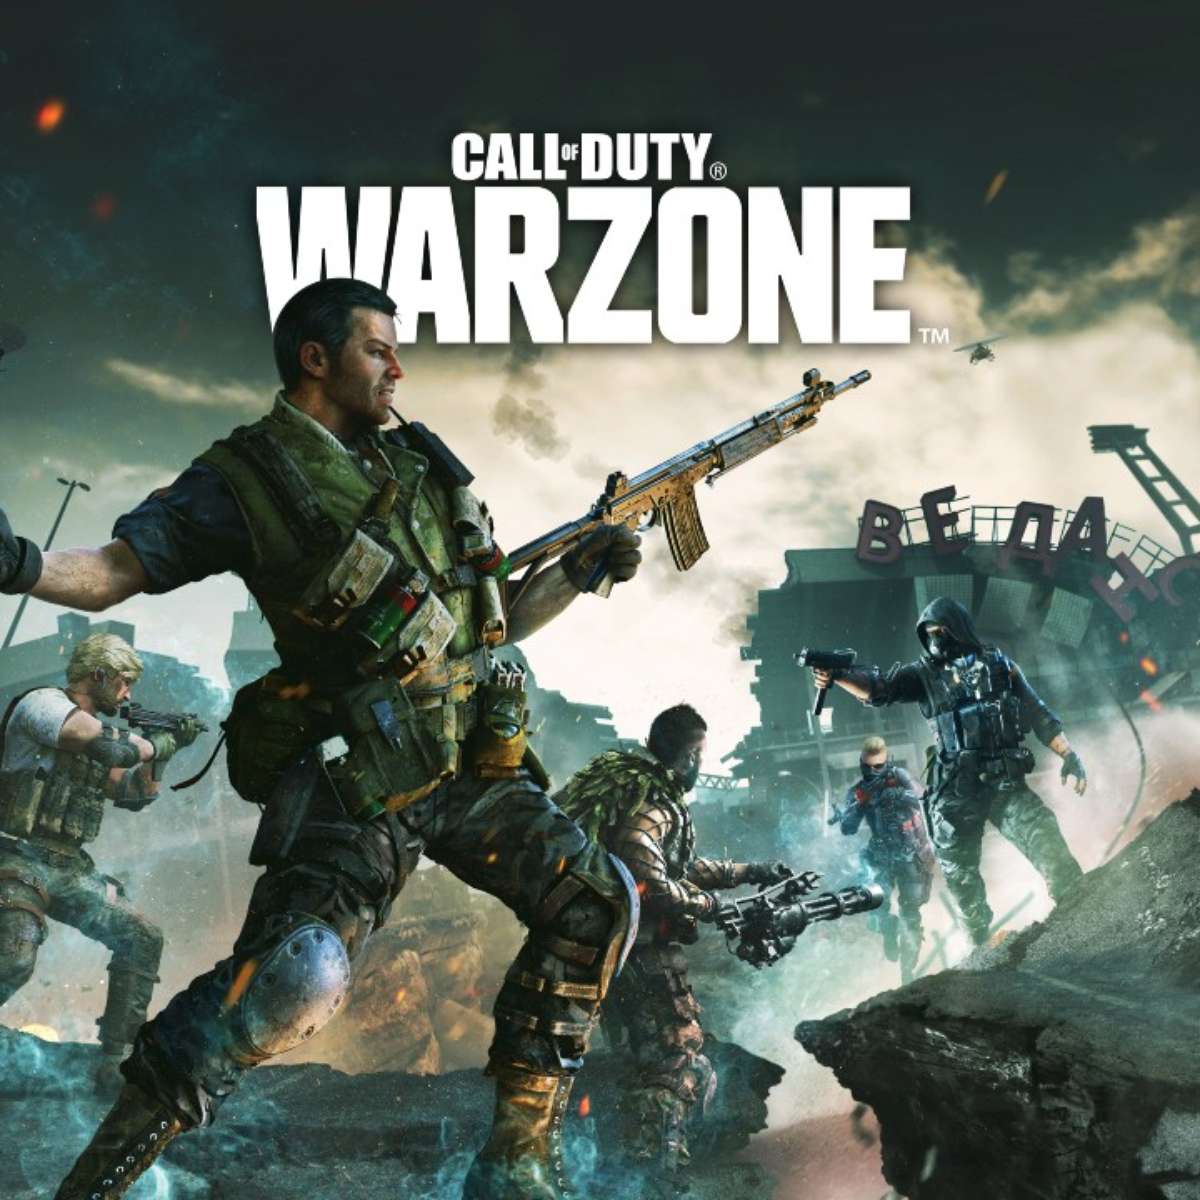 Instalação e configuração de Call of Duty: Warzone